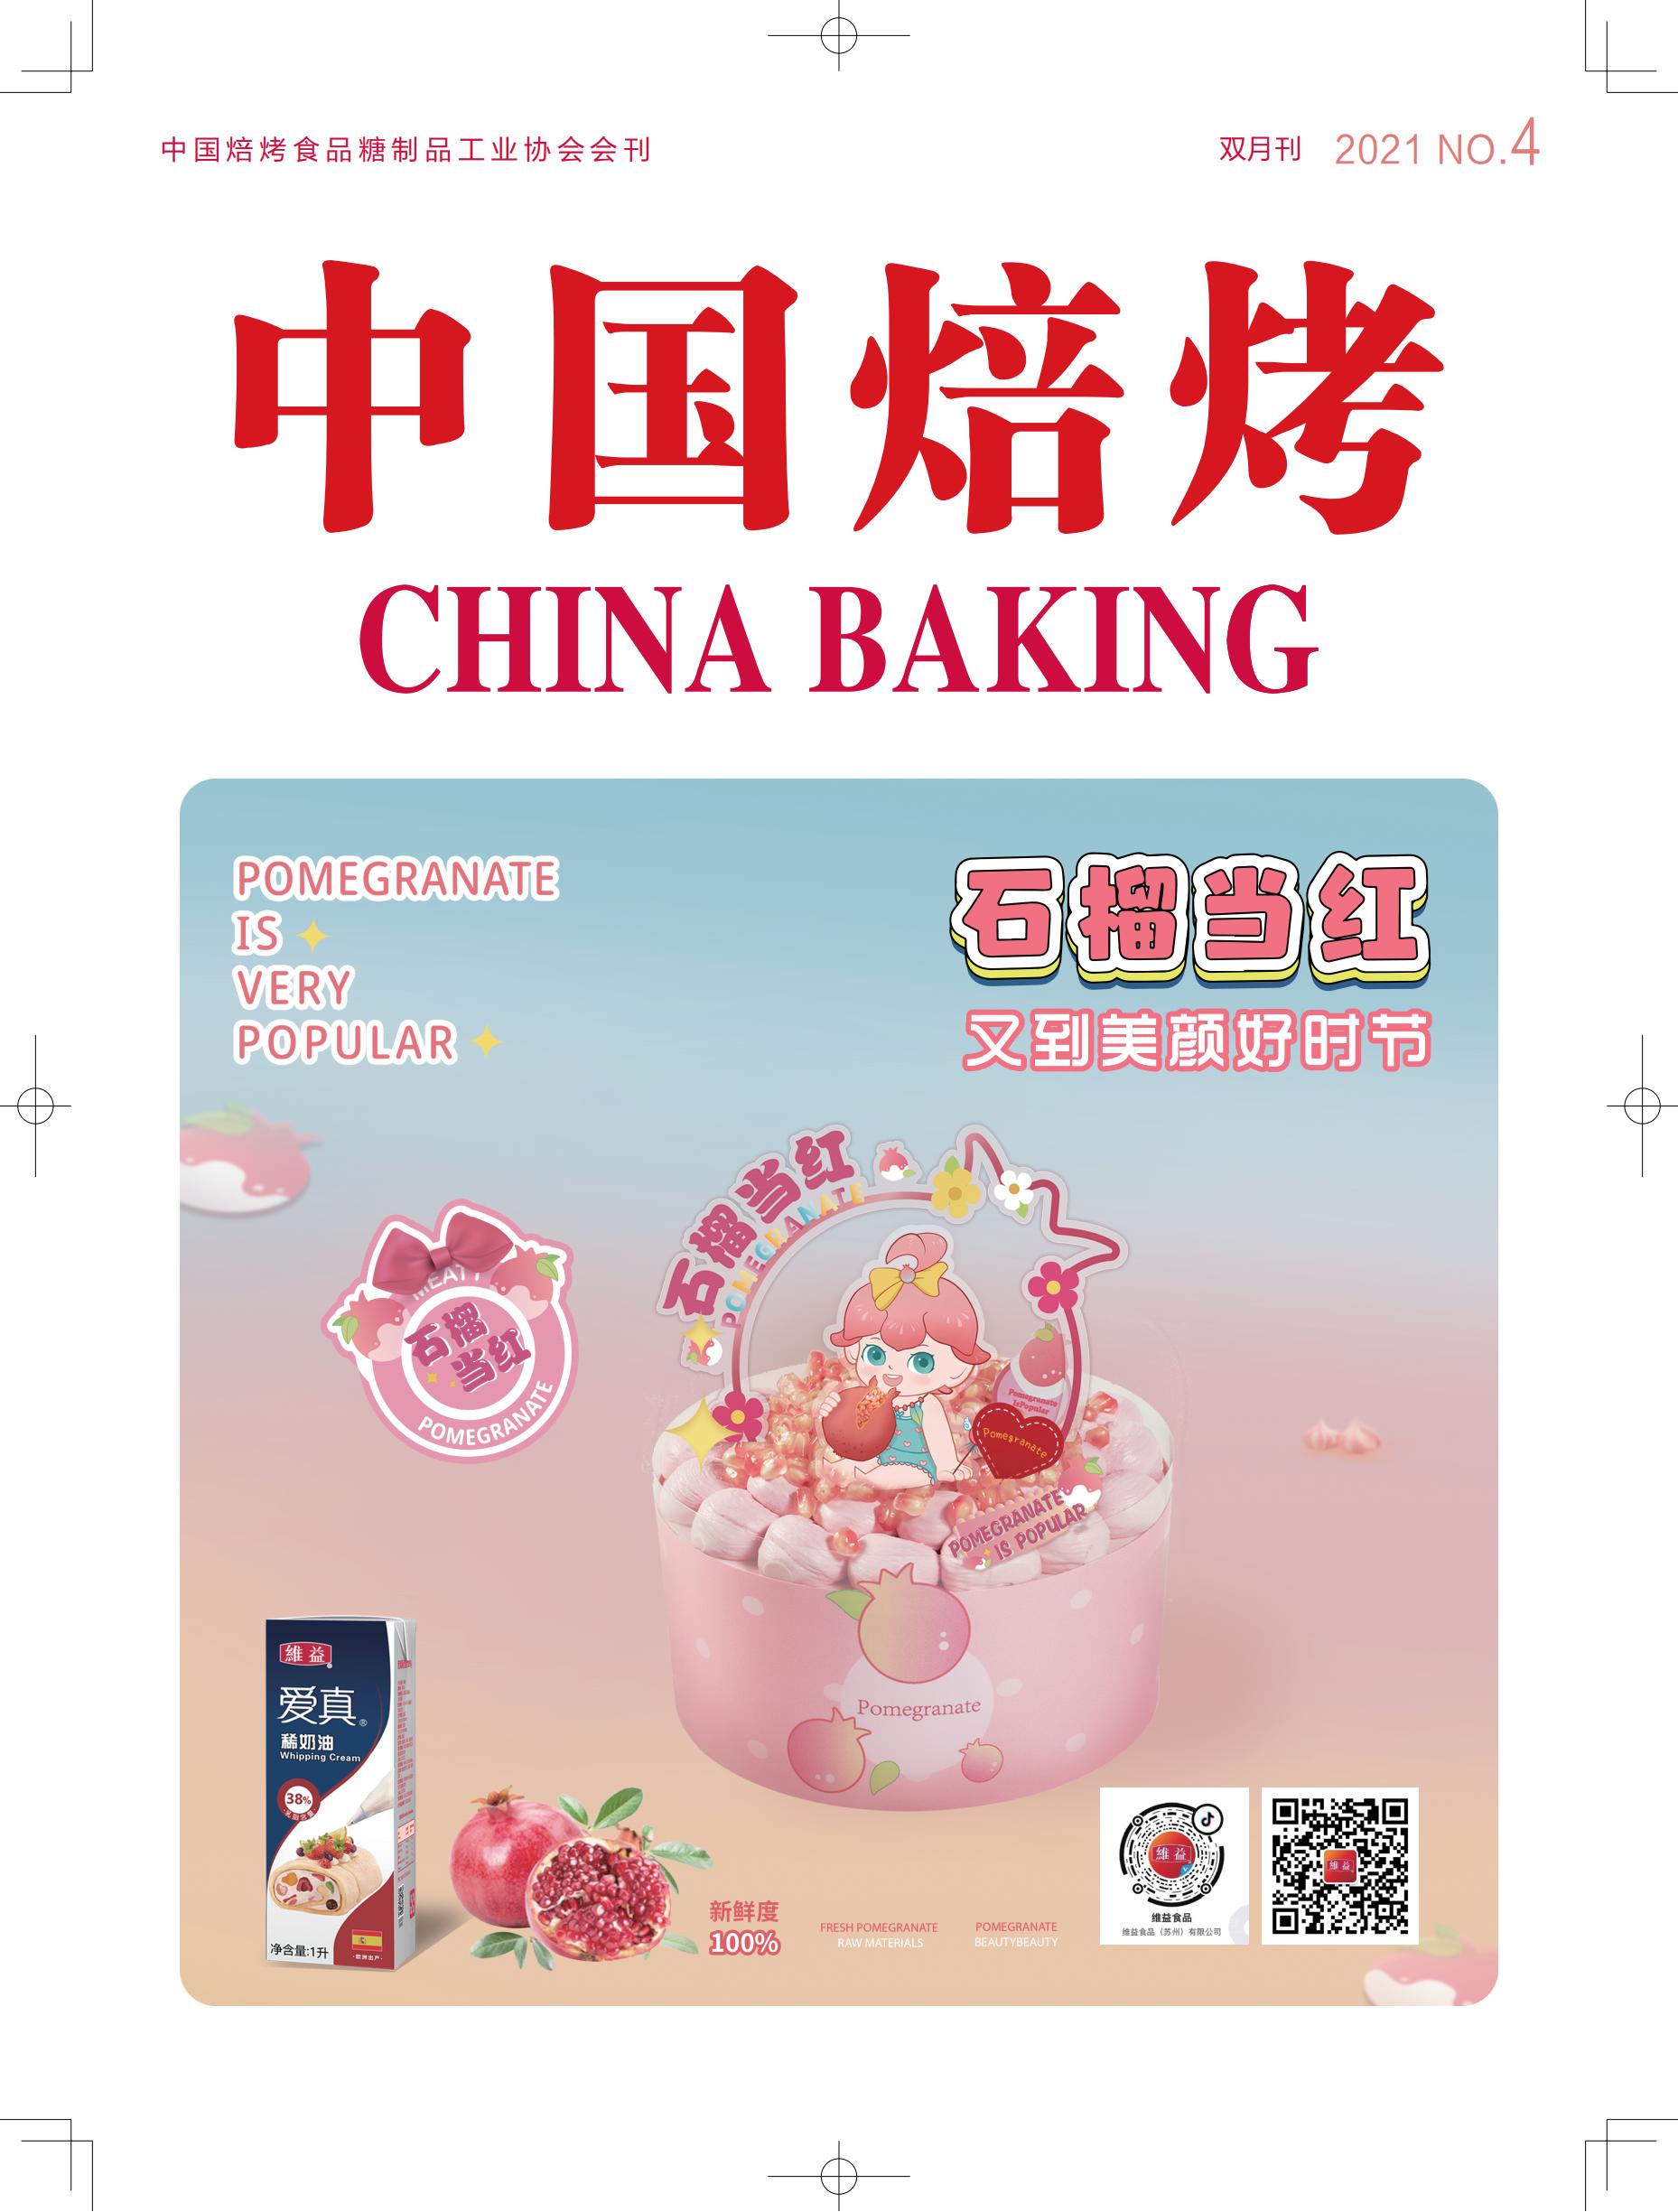 2021-4期-中国焙烤_00.jpg